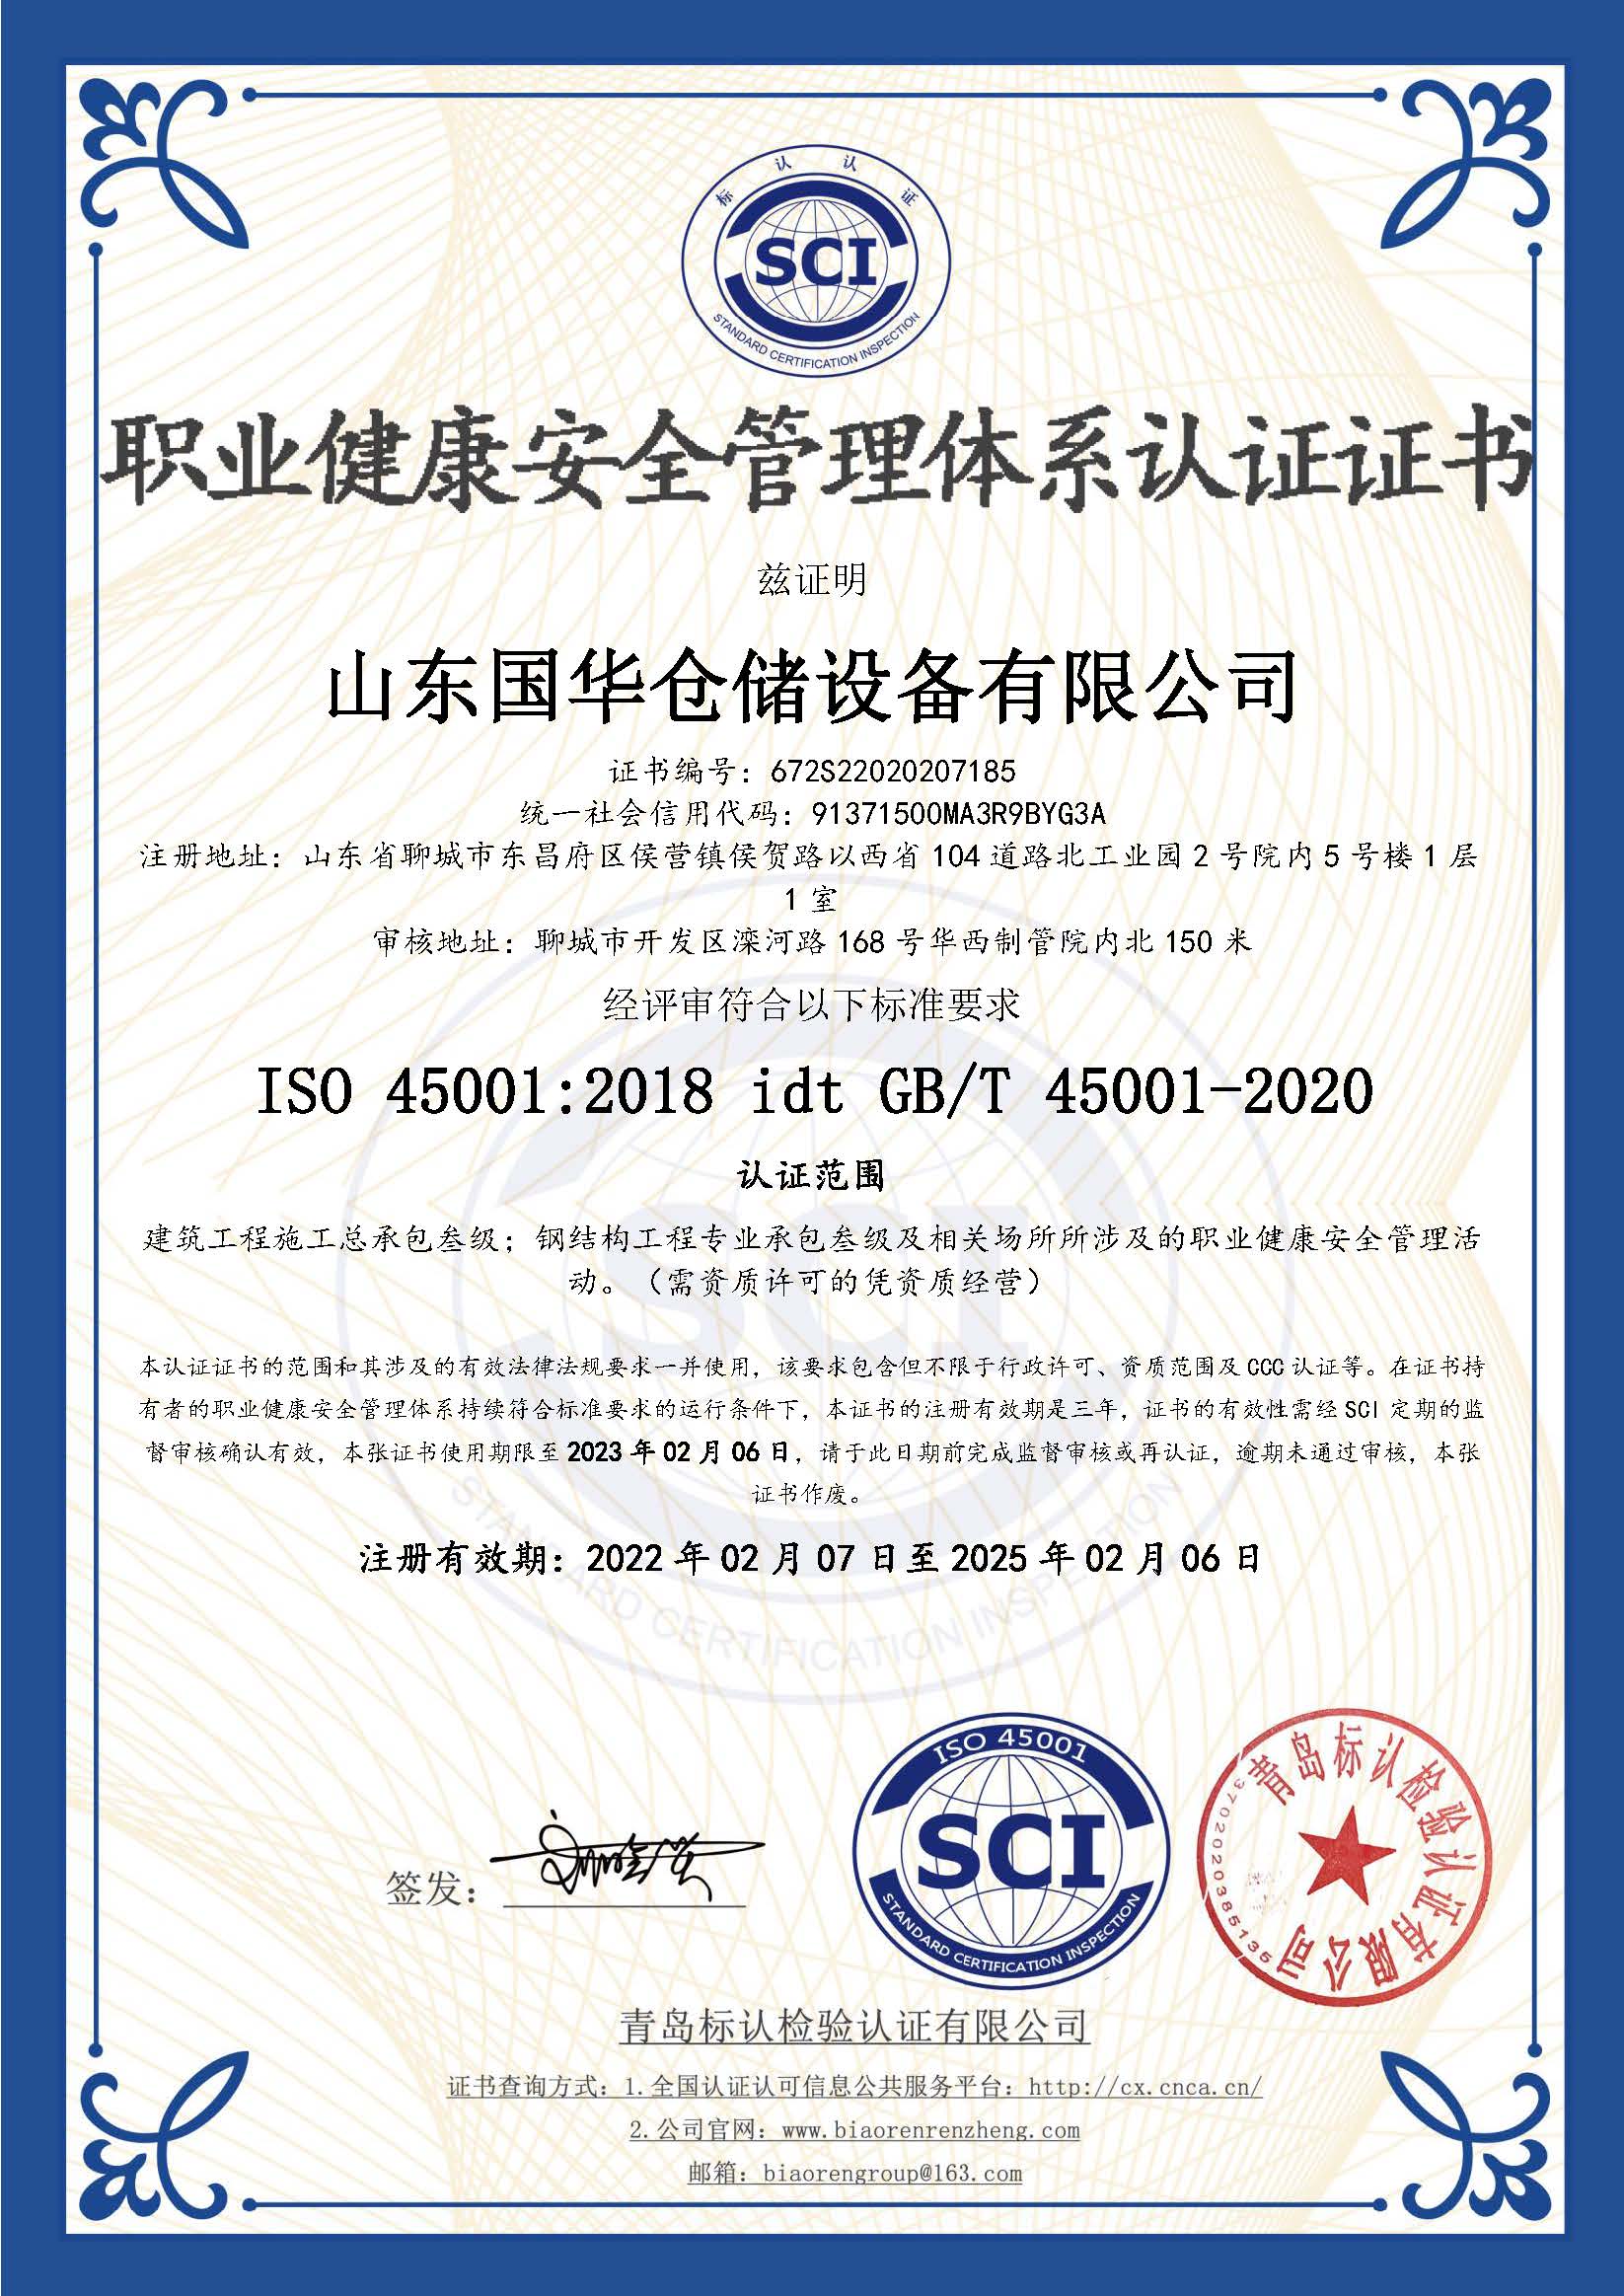 莆田钢板仓职业健康安全管理体系认证证书